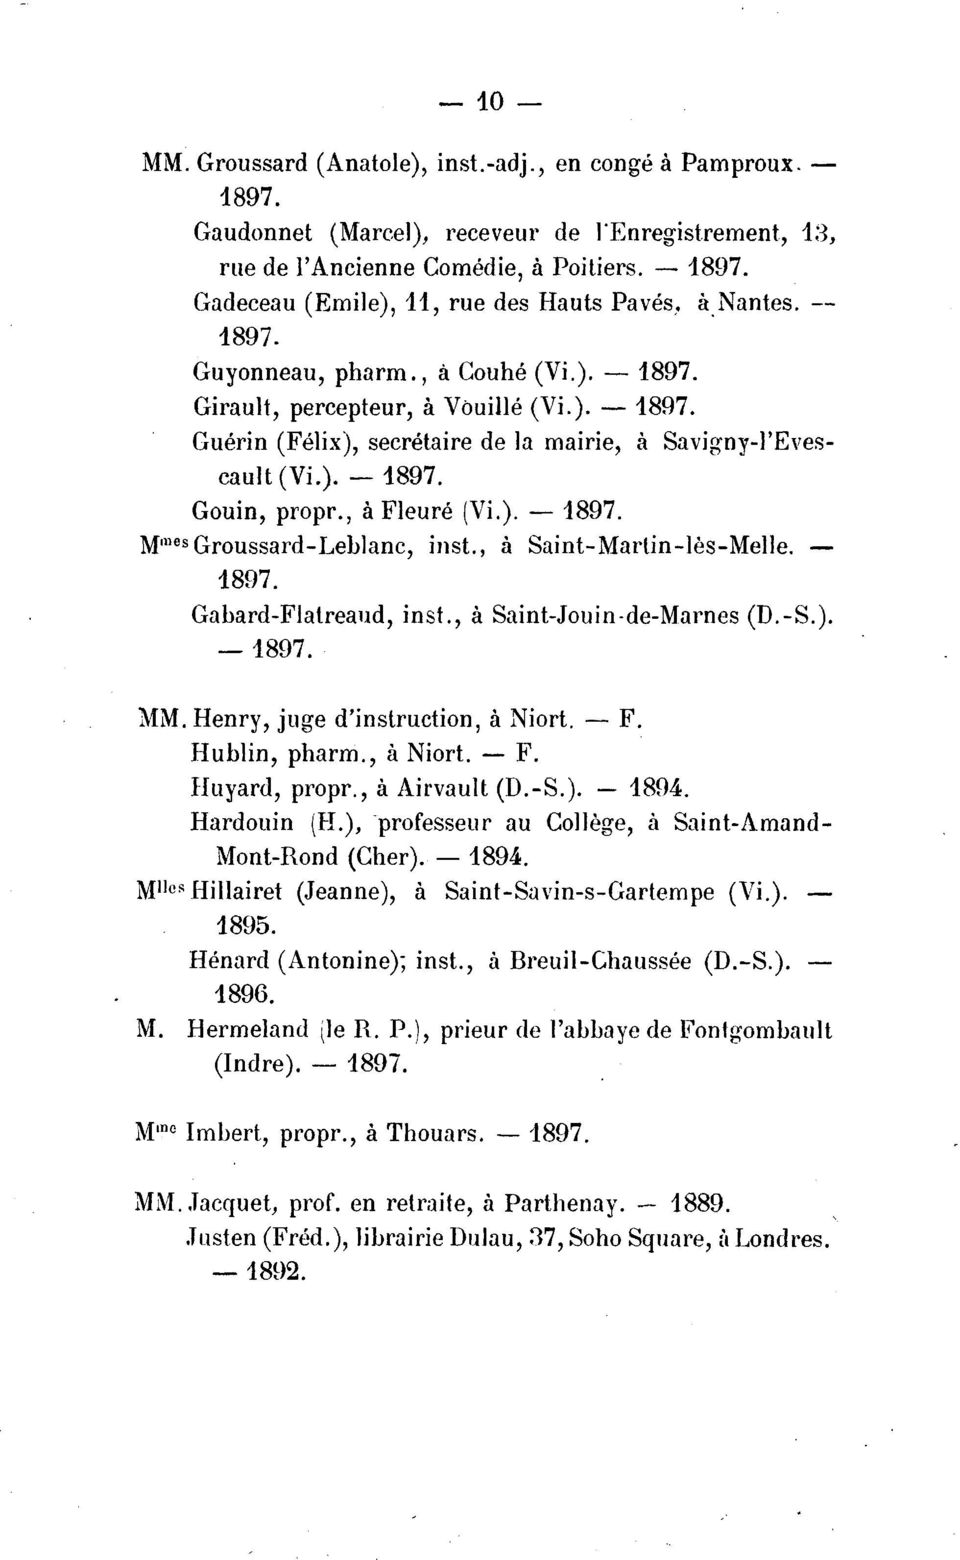 ). - 1897. Gouin, propr., a Fleure (Vi.). - 1897. Mm sgroussard-leblanc, inst., a Saint-Marlin-les-Melle. 1897. Gabard-Flatreaud, inst., a Saint-Jouin-de-Marnes (D.-S.). -1897. MM.